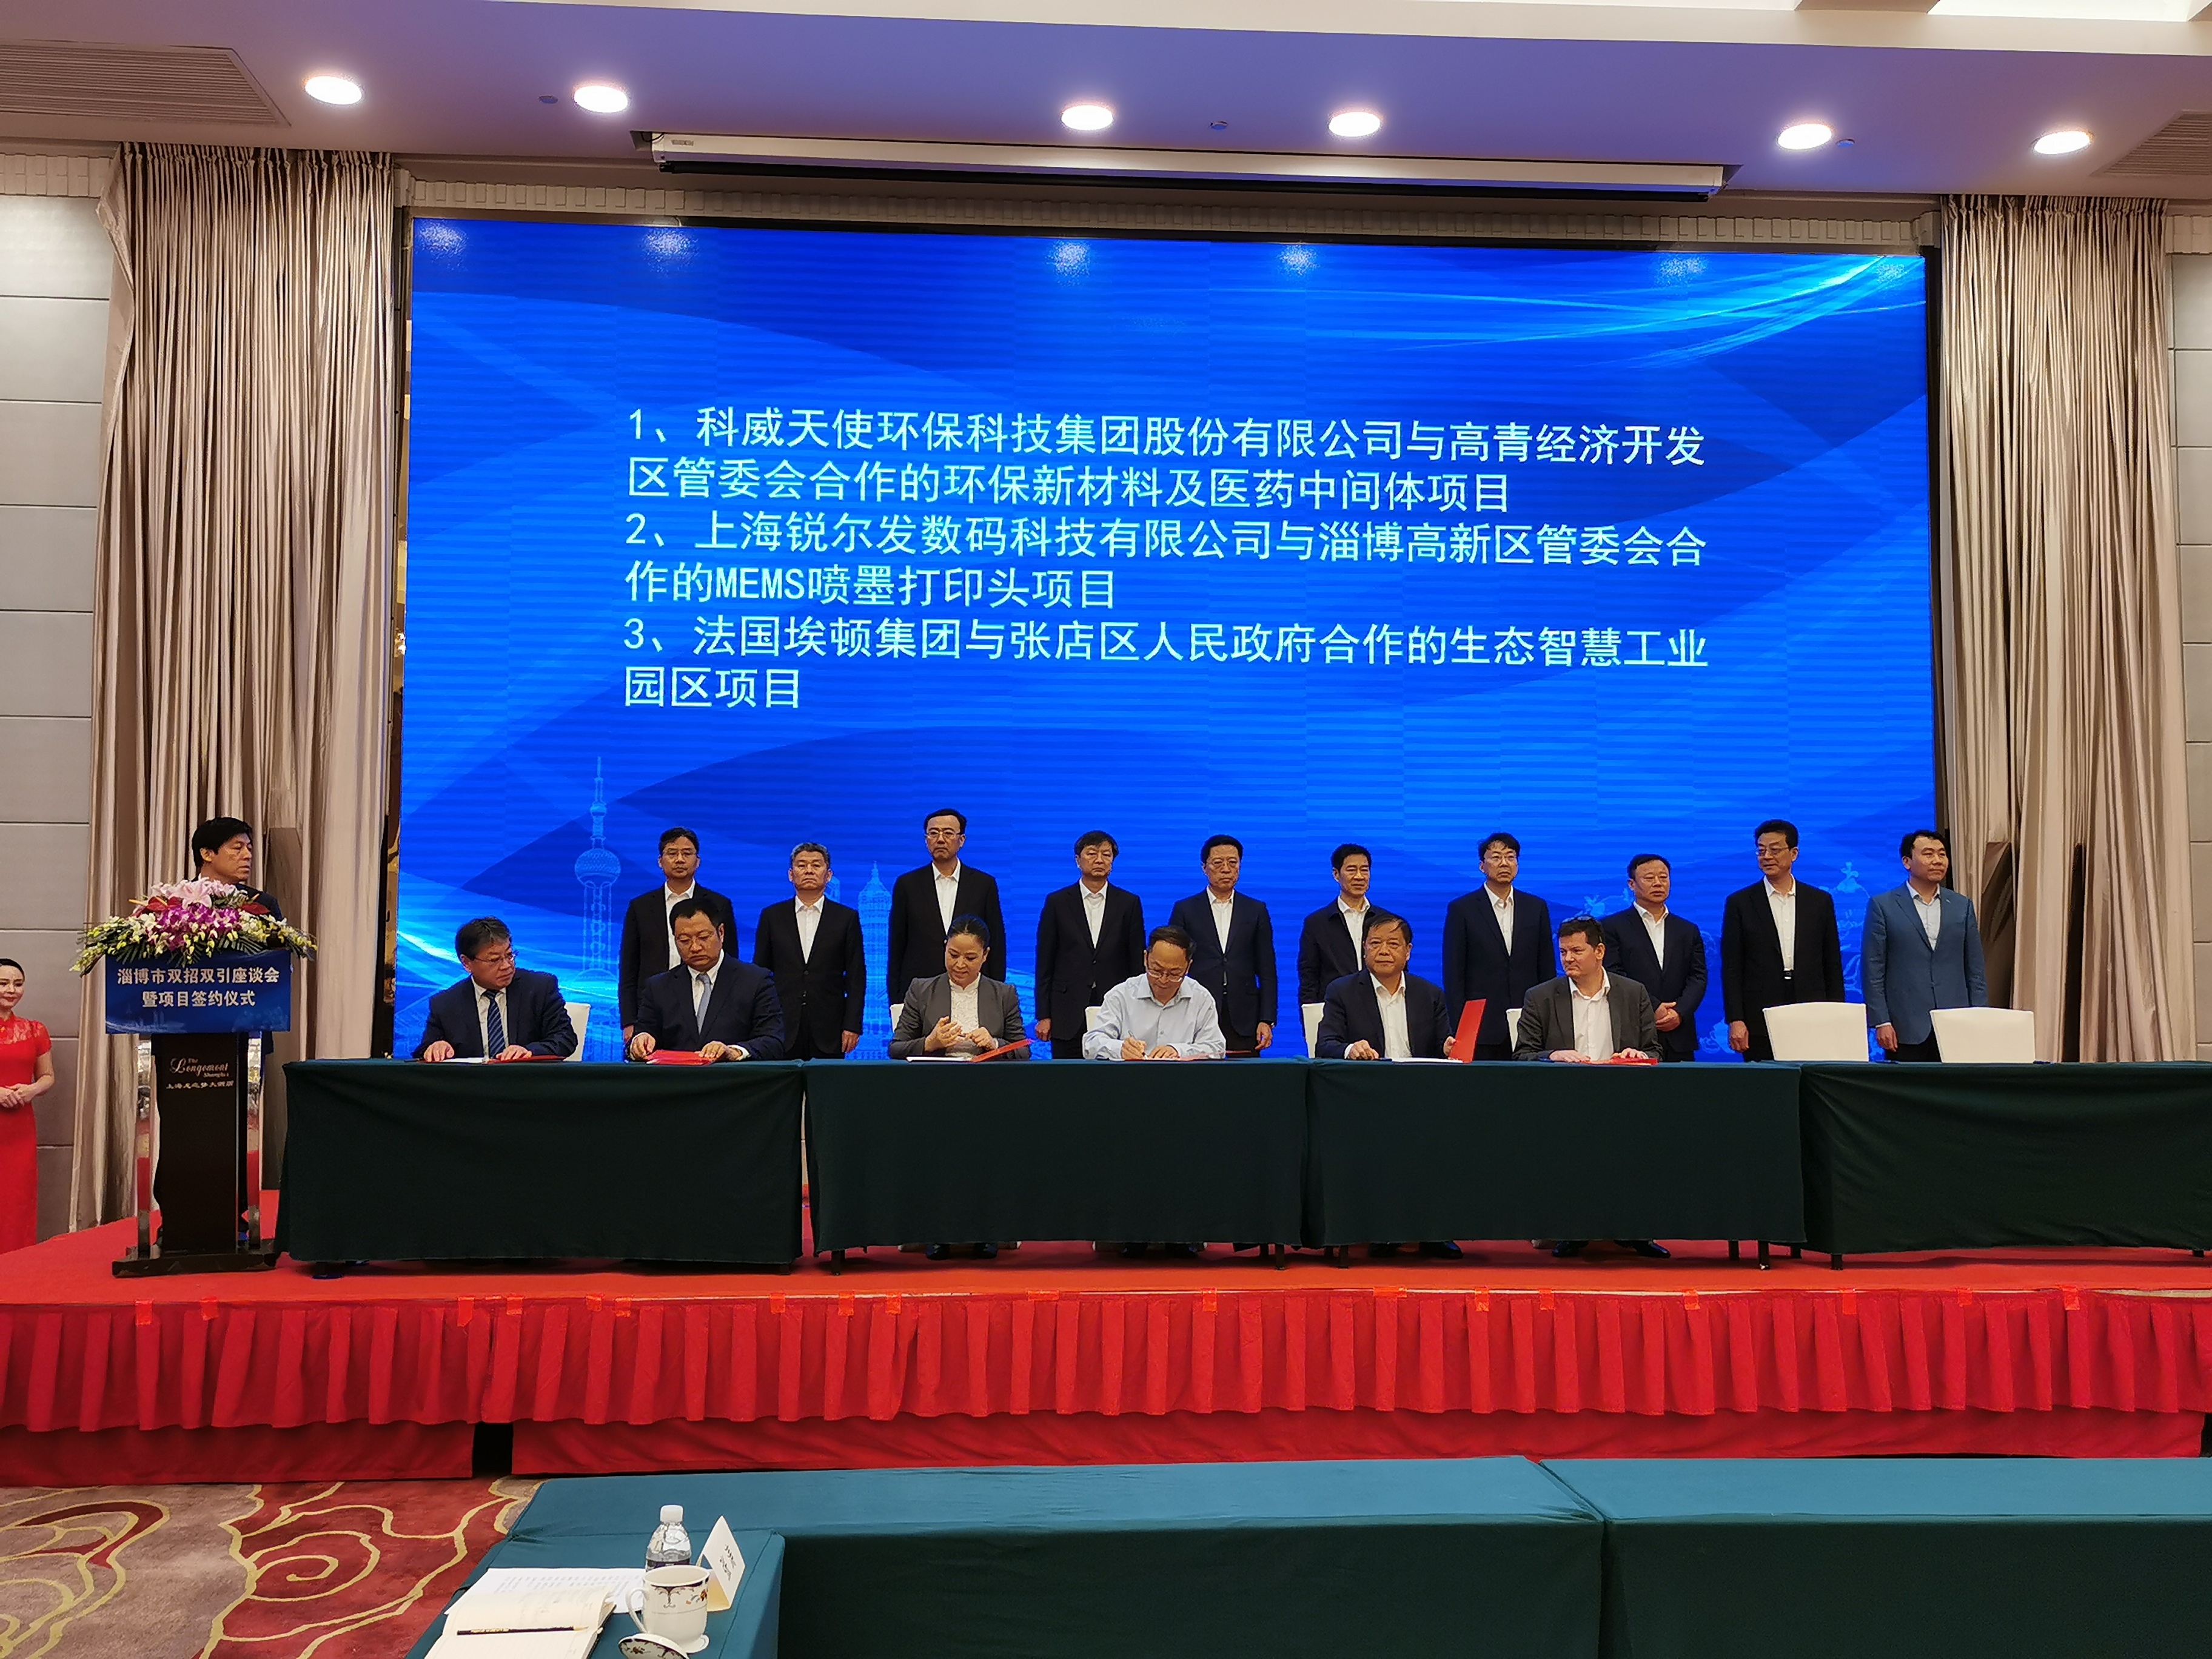 快讯 | 淄博市双招双引座谈会暨项目签约仪式在上海举行